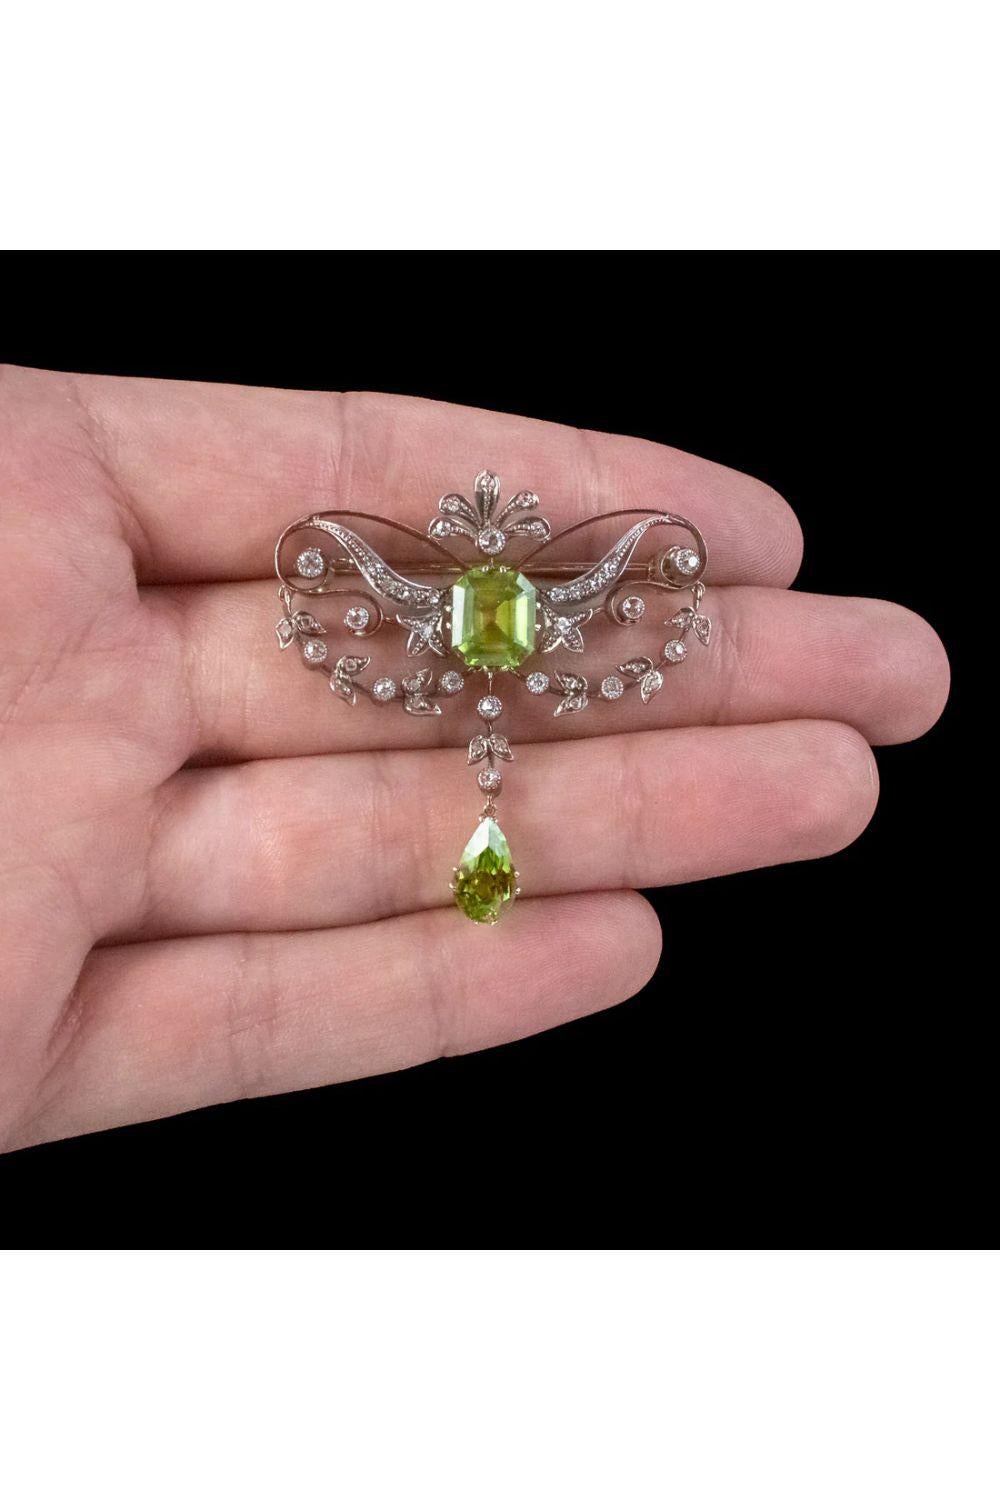 Women's Antique Edwardian Peridot Diamond Brooch in 18 Carat Gold Silver For Sale